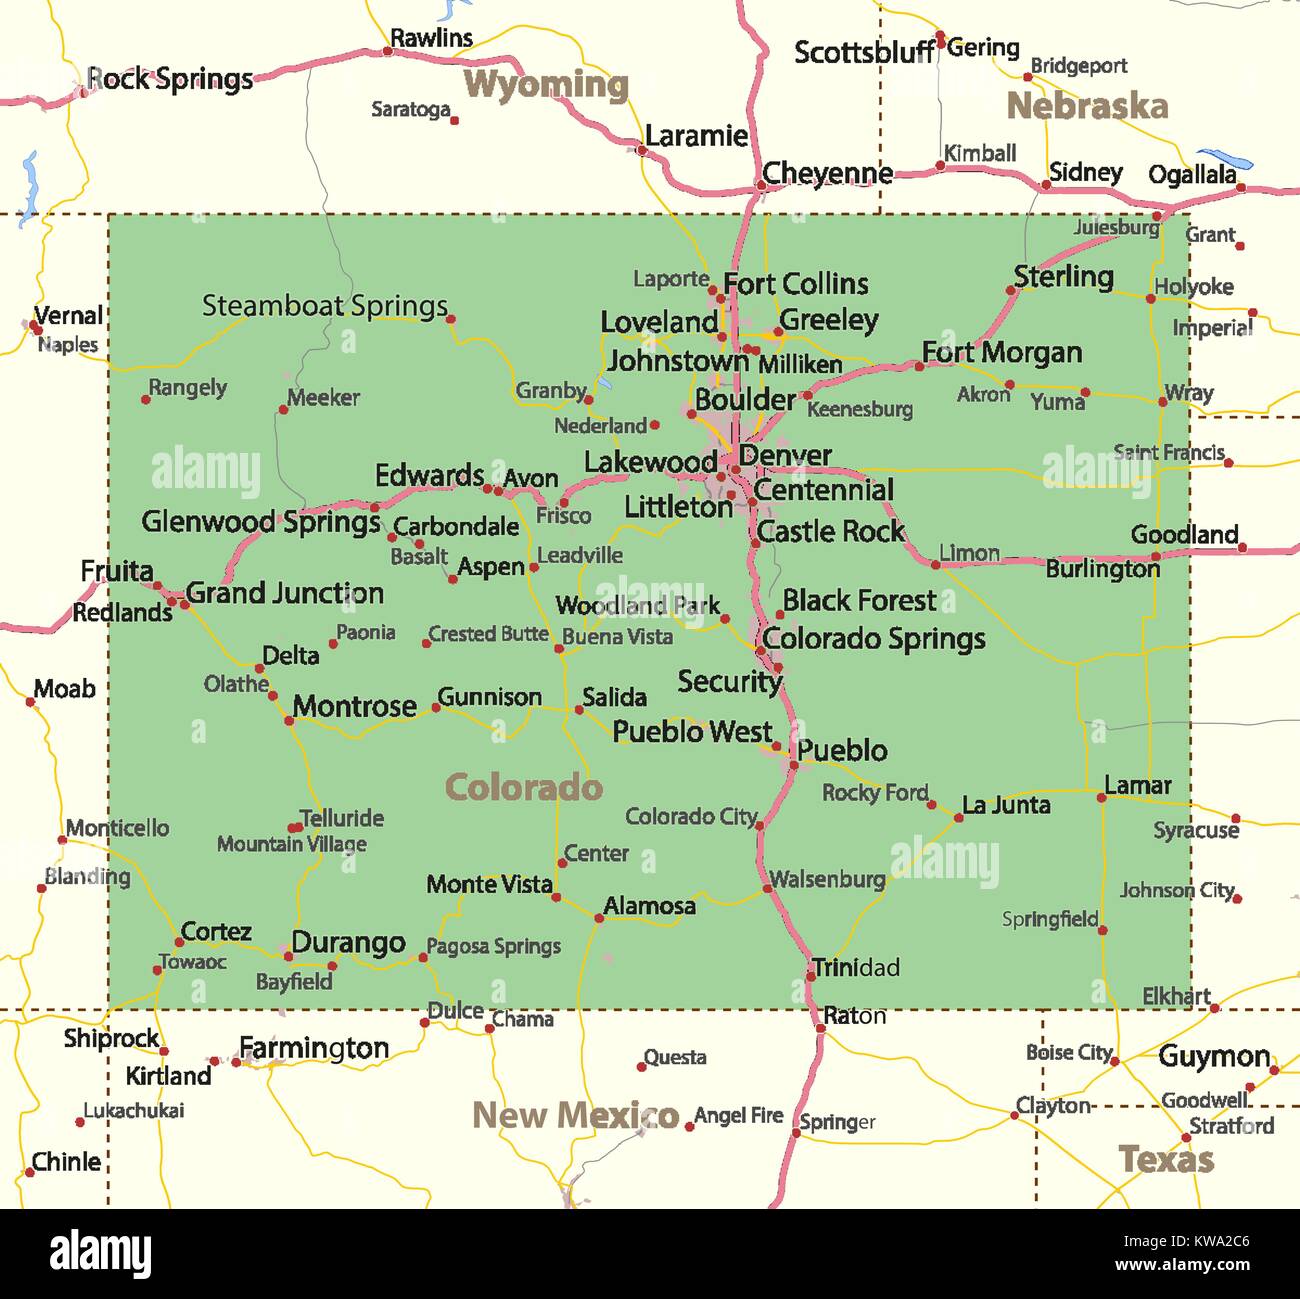 Mappa di Colorado. Mostra i confini, zone urbane, nomi di località, strade e autostrade. Proiezione: proiezione di Mercatore. Illustrazione Vettoriale